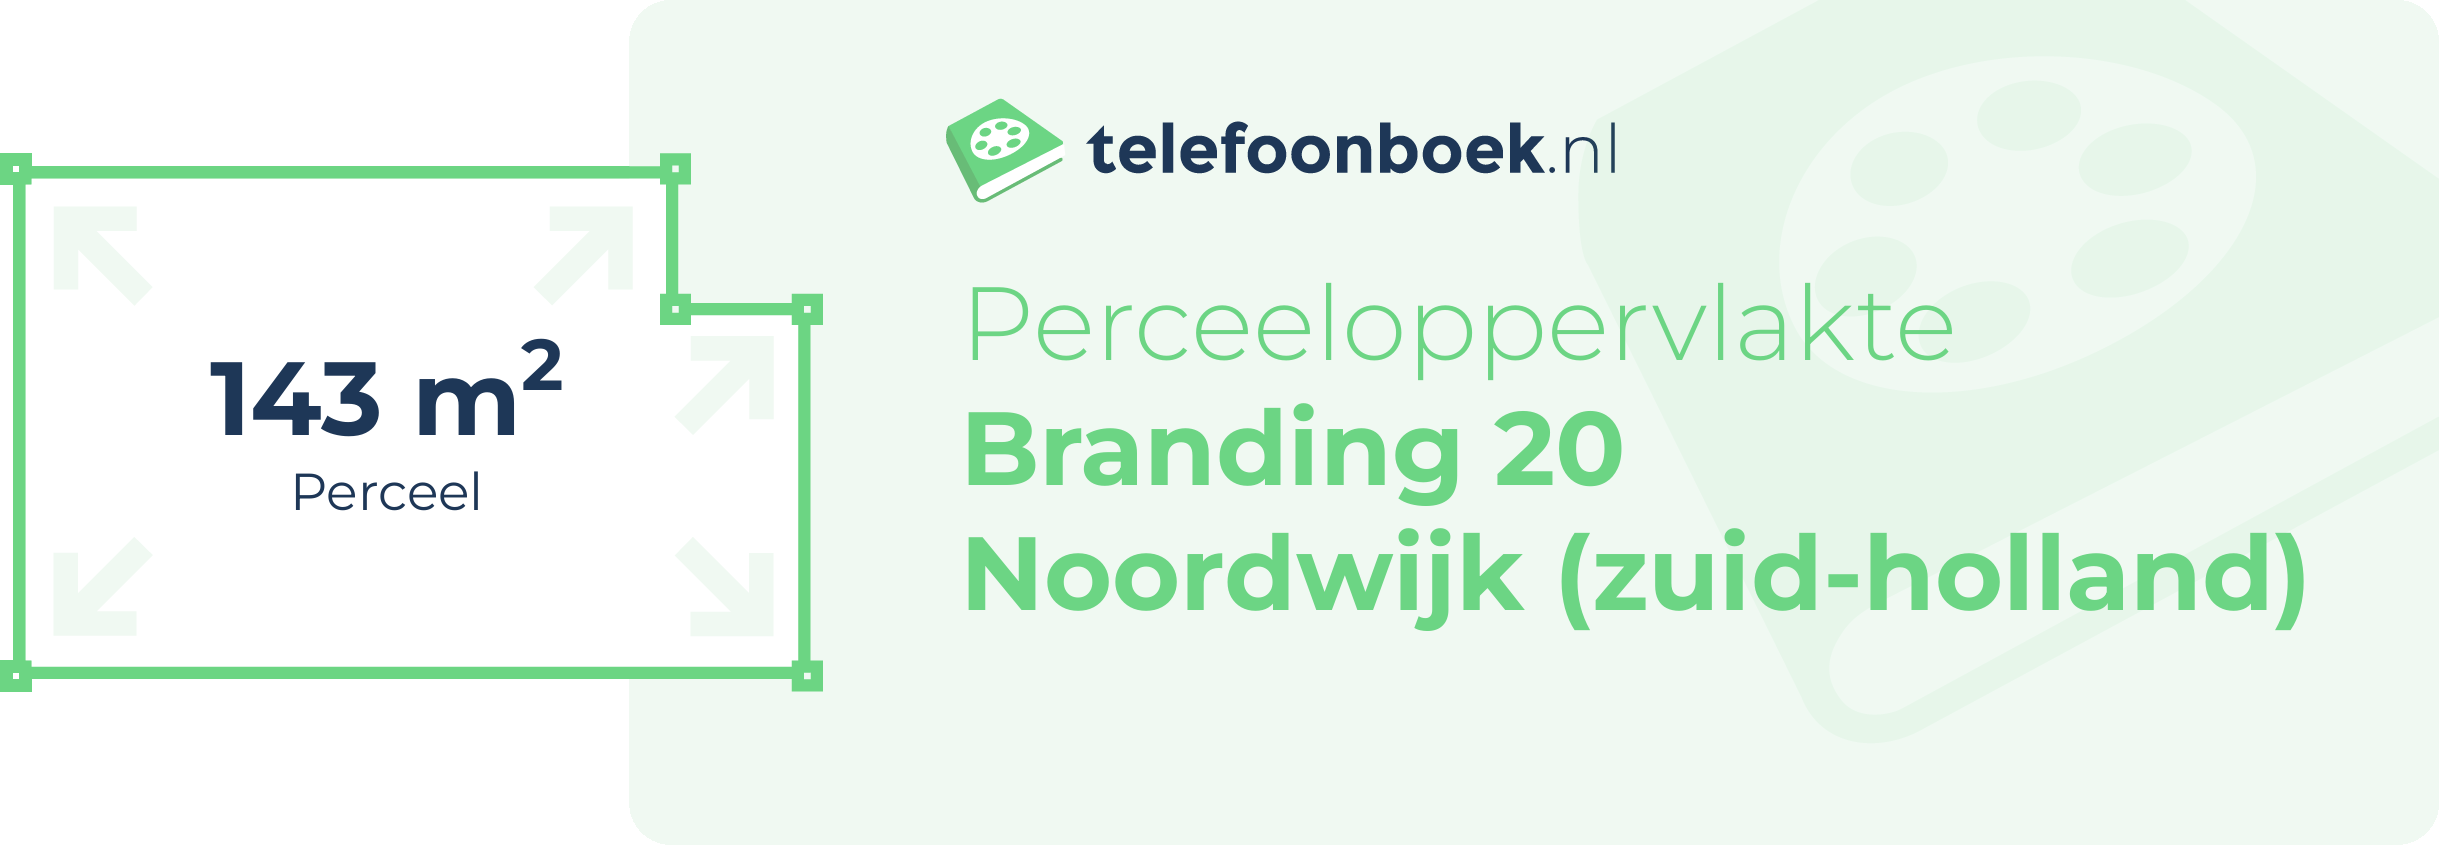 Perceeloppervlakte Branding 20 Noordwijk (Zuid-Holland)